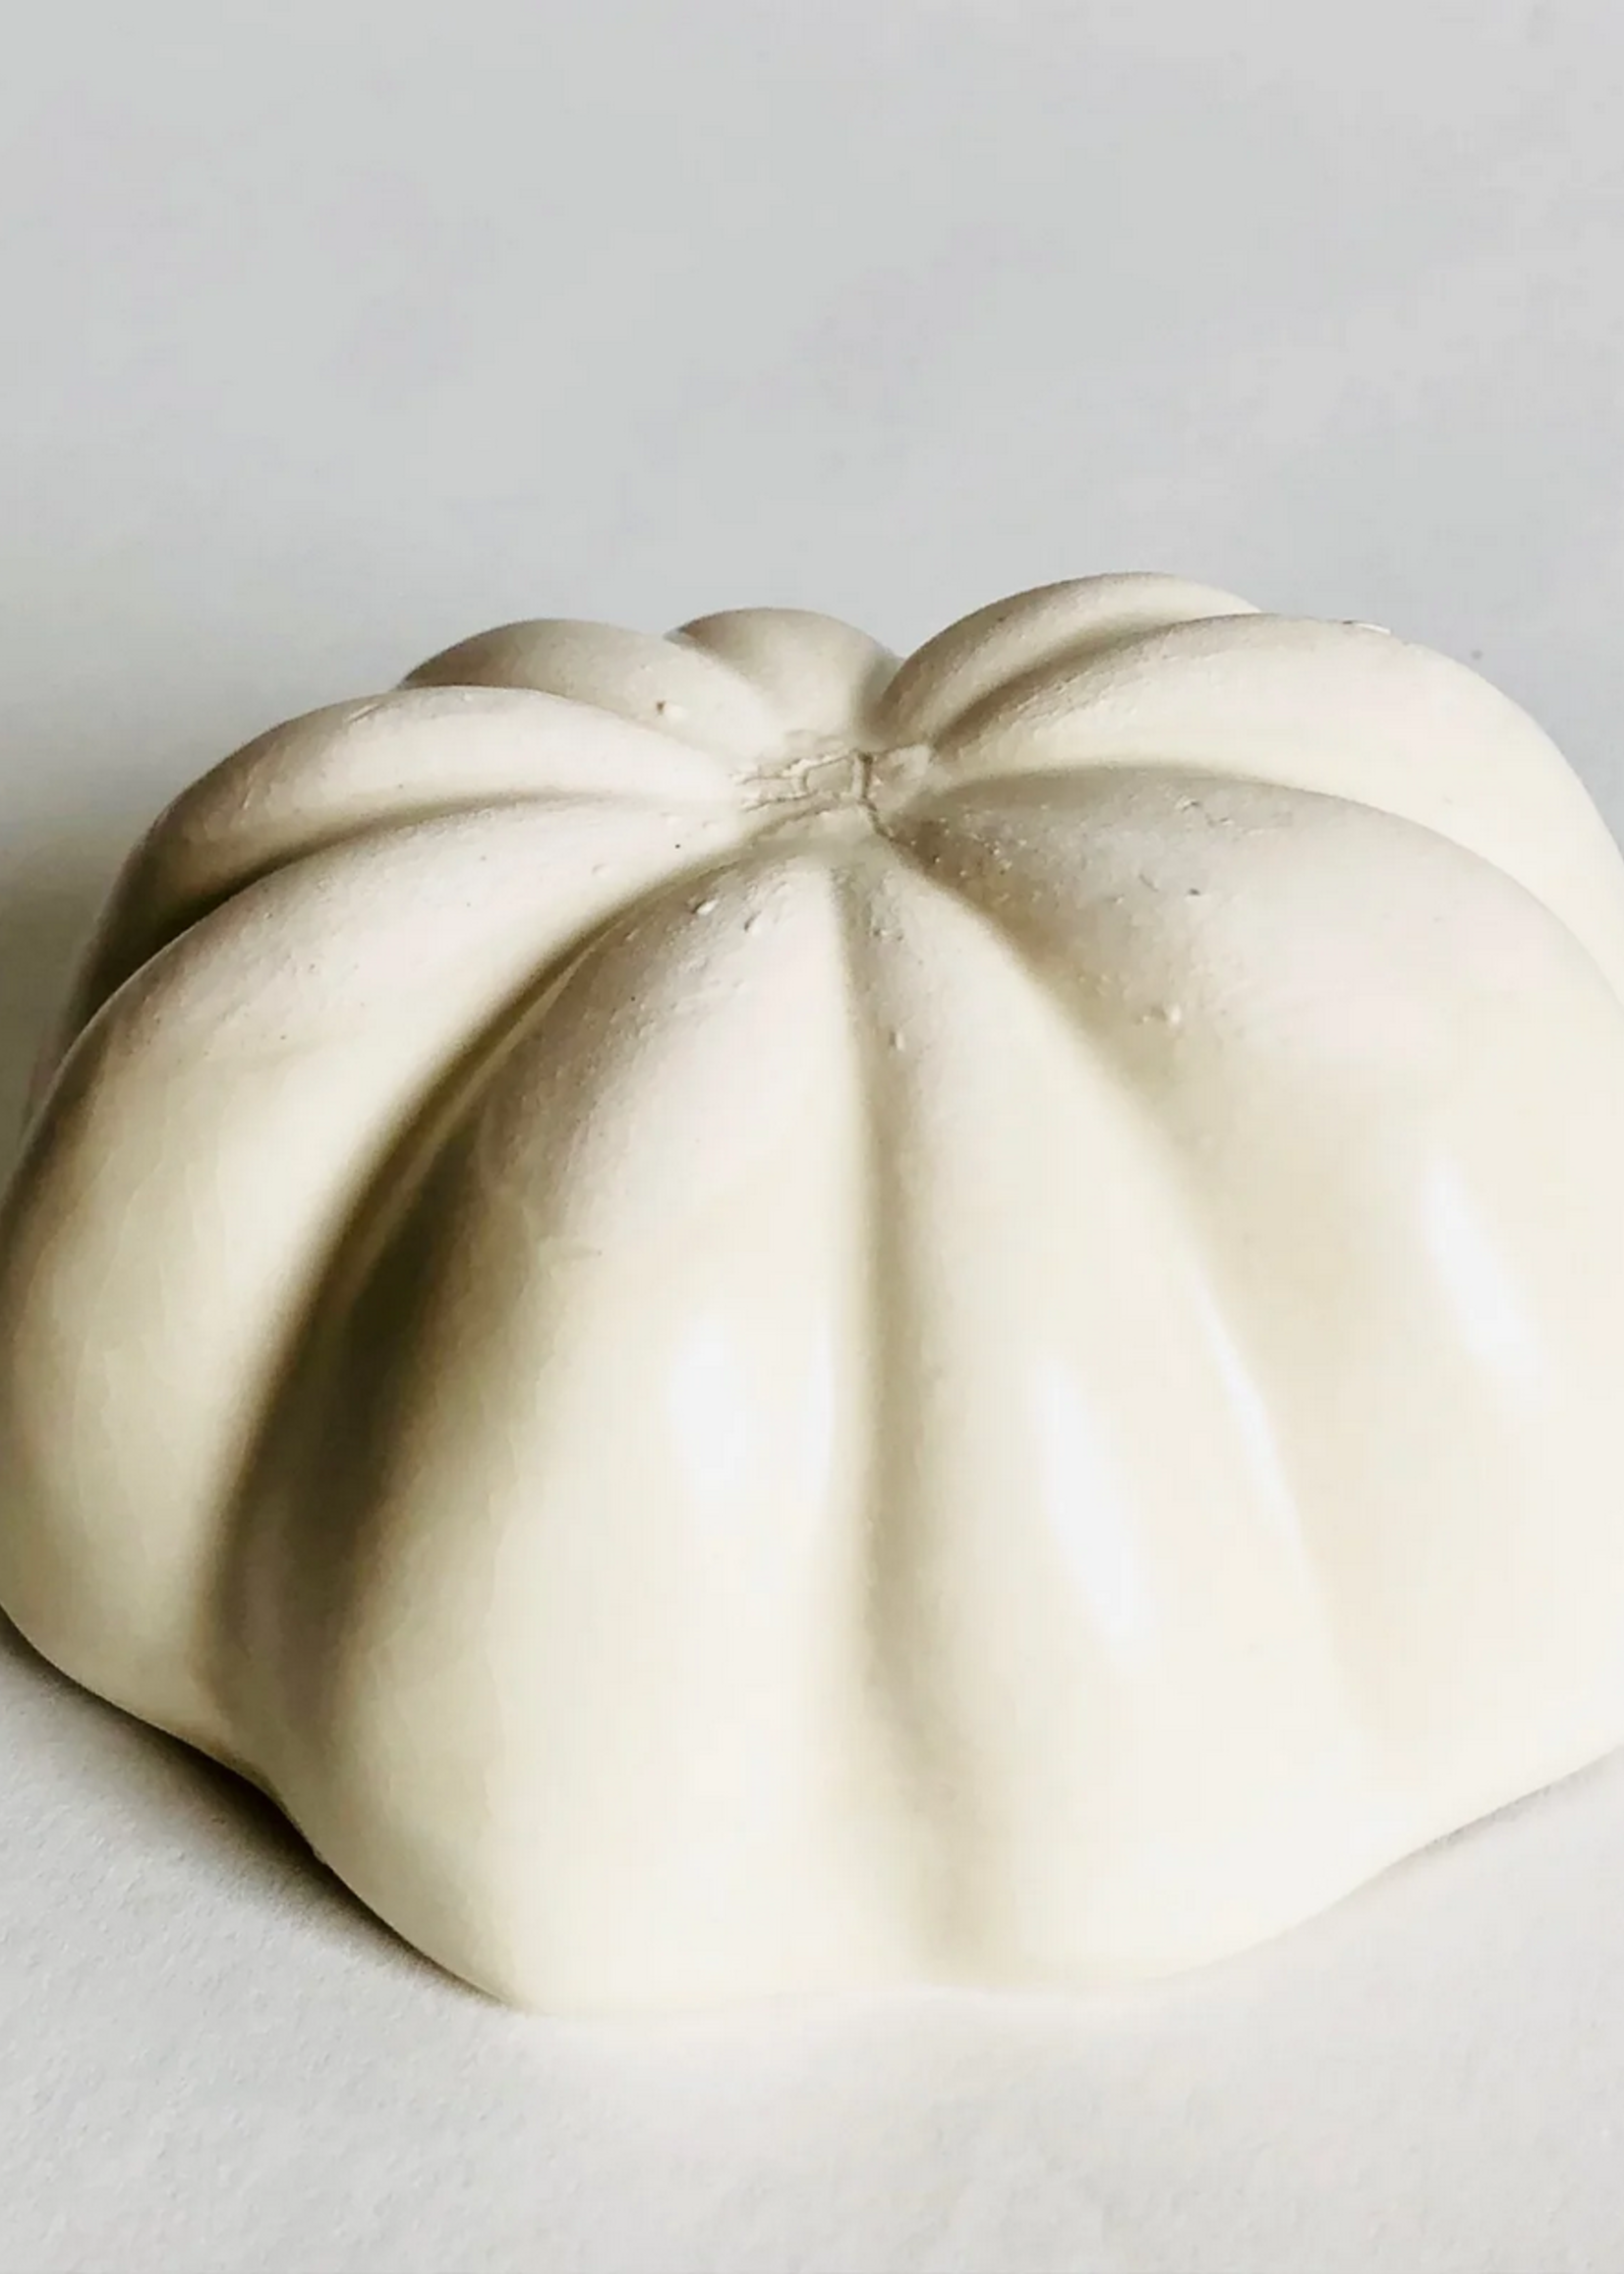 Beiko Ceramics Acorn Squash - Medium: Coconut/ Clear